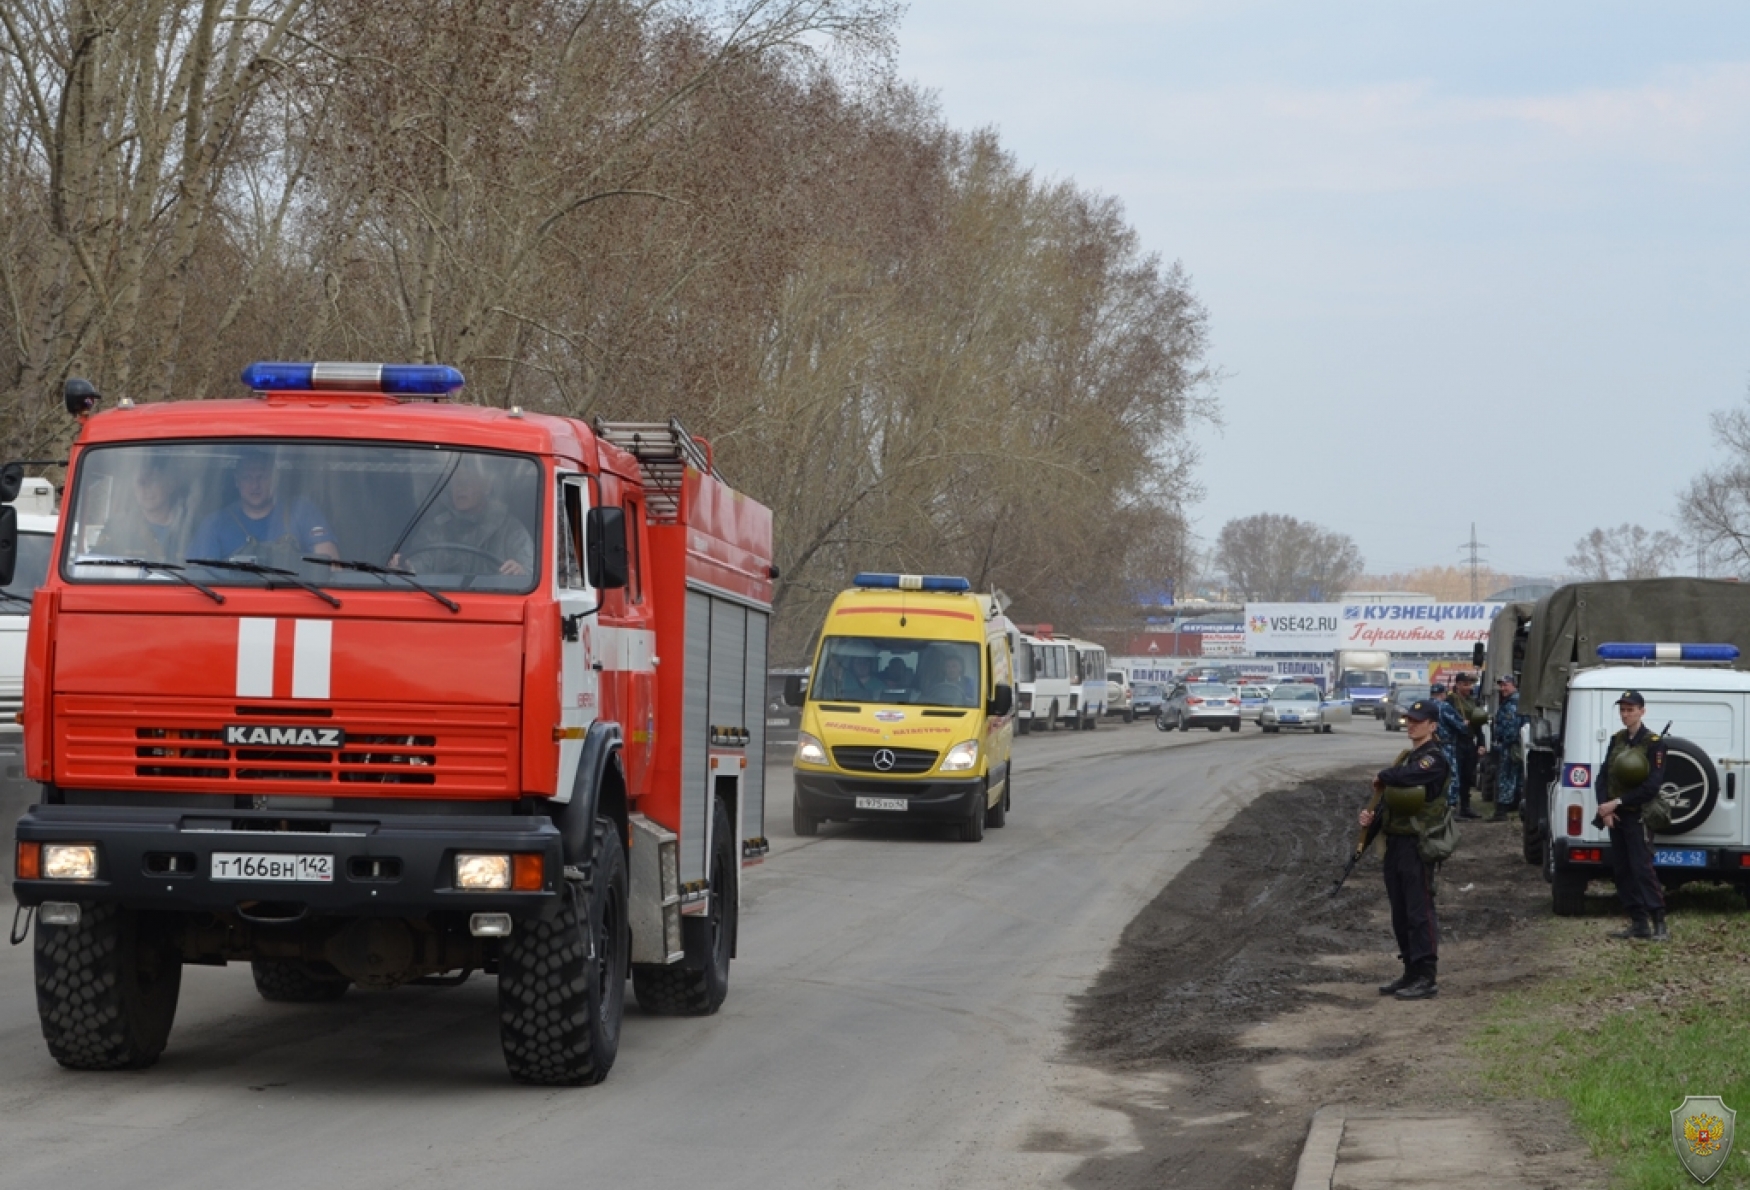 Прибытие групп ликвидации последствии теракта и медицинского обеспечения, аварийно-спасательные формирования г. Кемерово